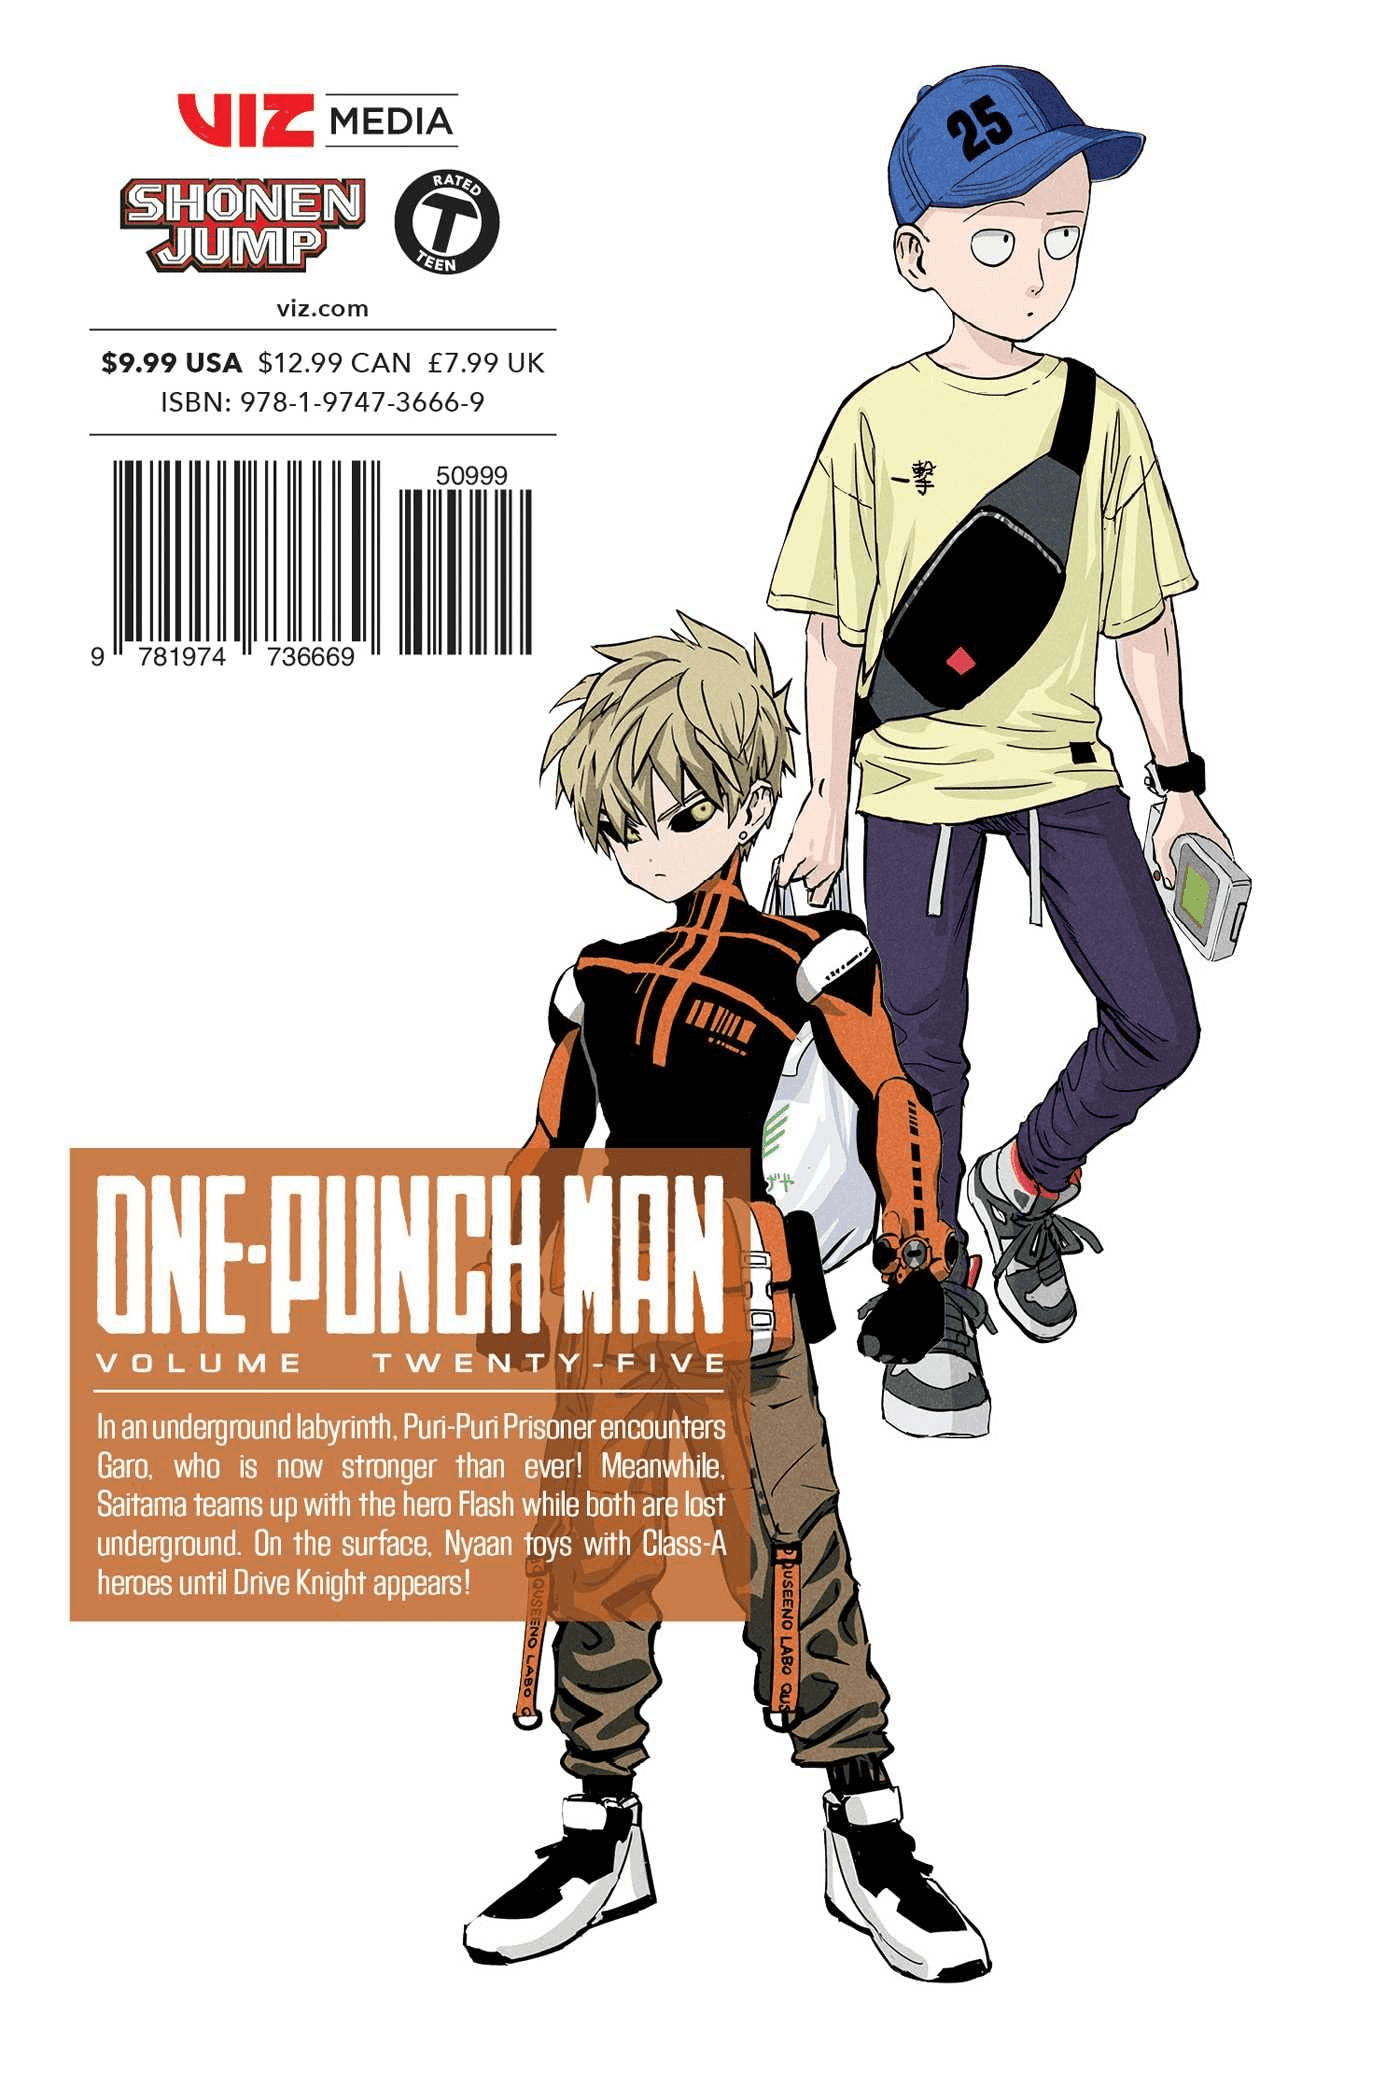 Mangá de One Punch Man completo em pdf para baixar 